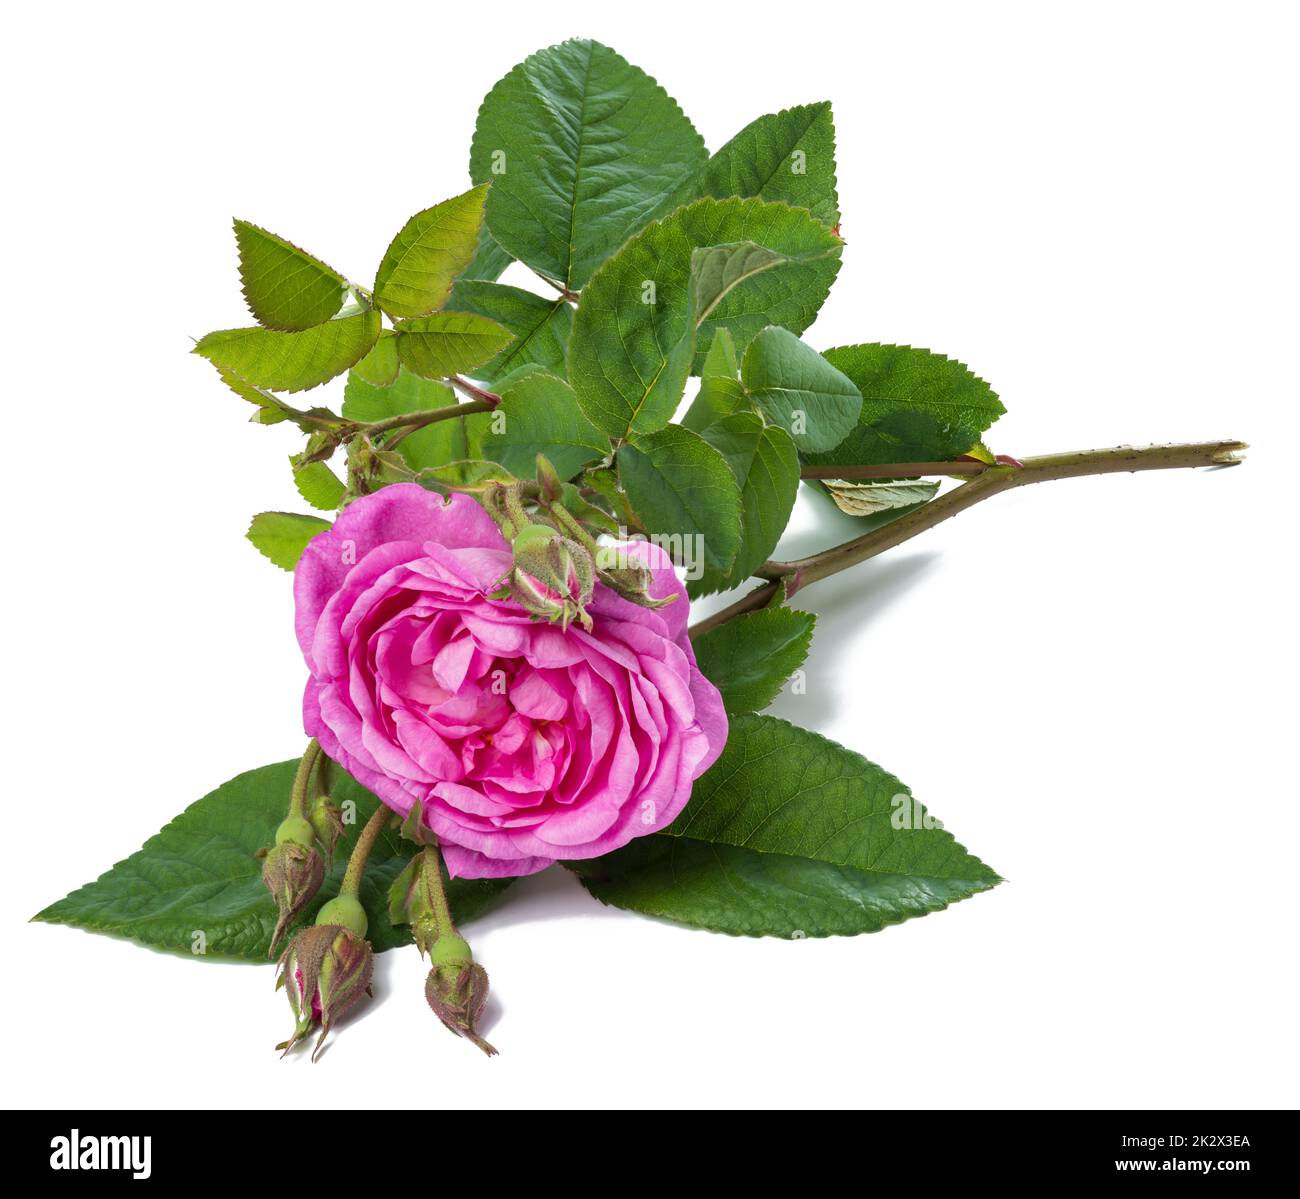 Blühende rosa Rose Knospe mit grünen Blättern auf weißem Hintergrund, schöne Blume, Nahaufnahme Stockfoto